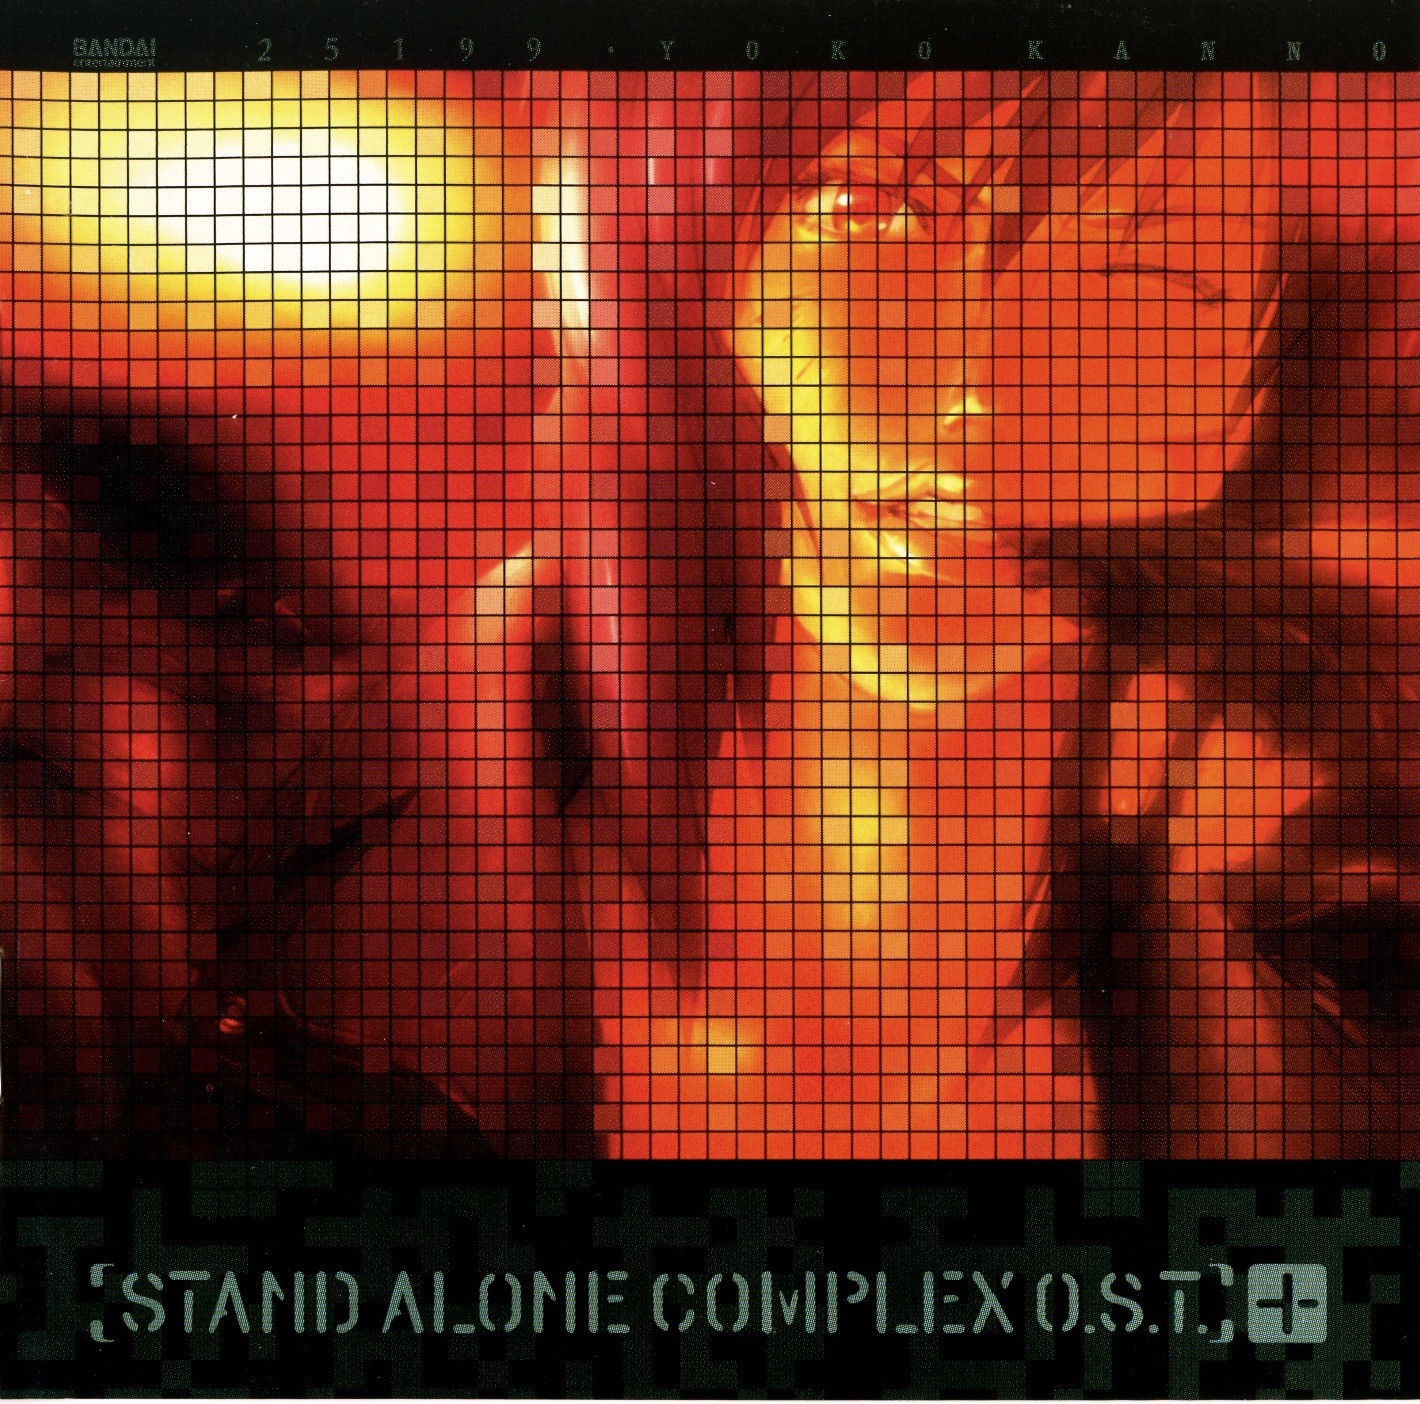 菅野よう子 (Yoko Kanno) – 攻殻機動隊 Stand Alone Complex O.S.T.+ [FLAC / 24bit Lossless / WEB] [2004.02.25]